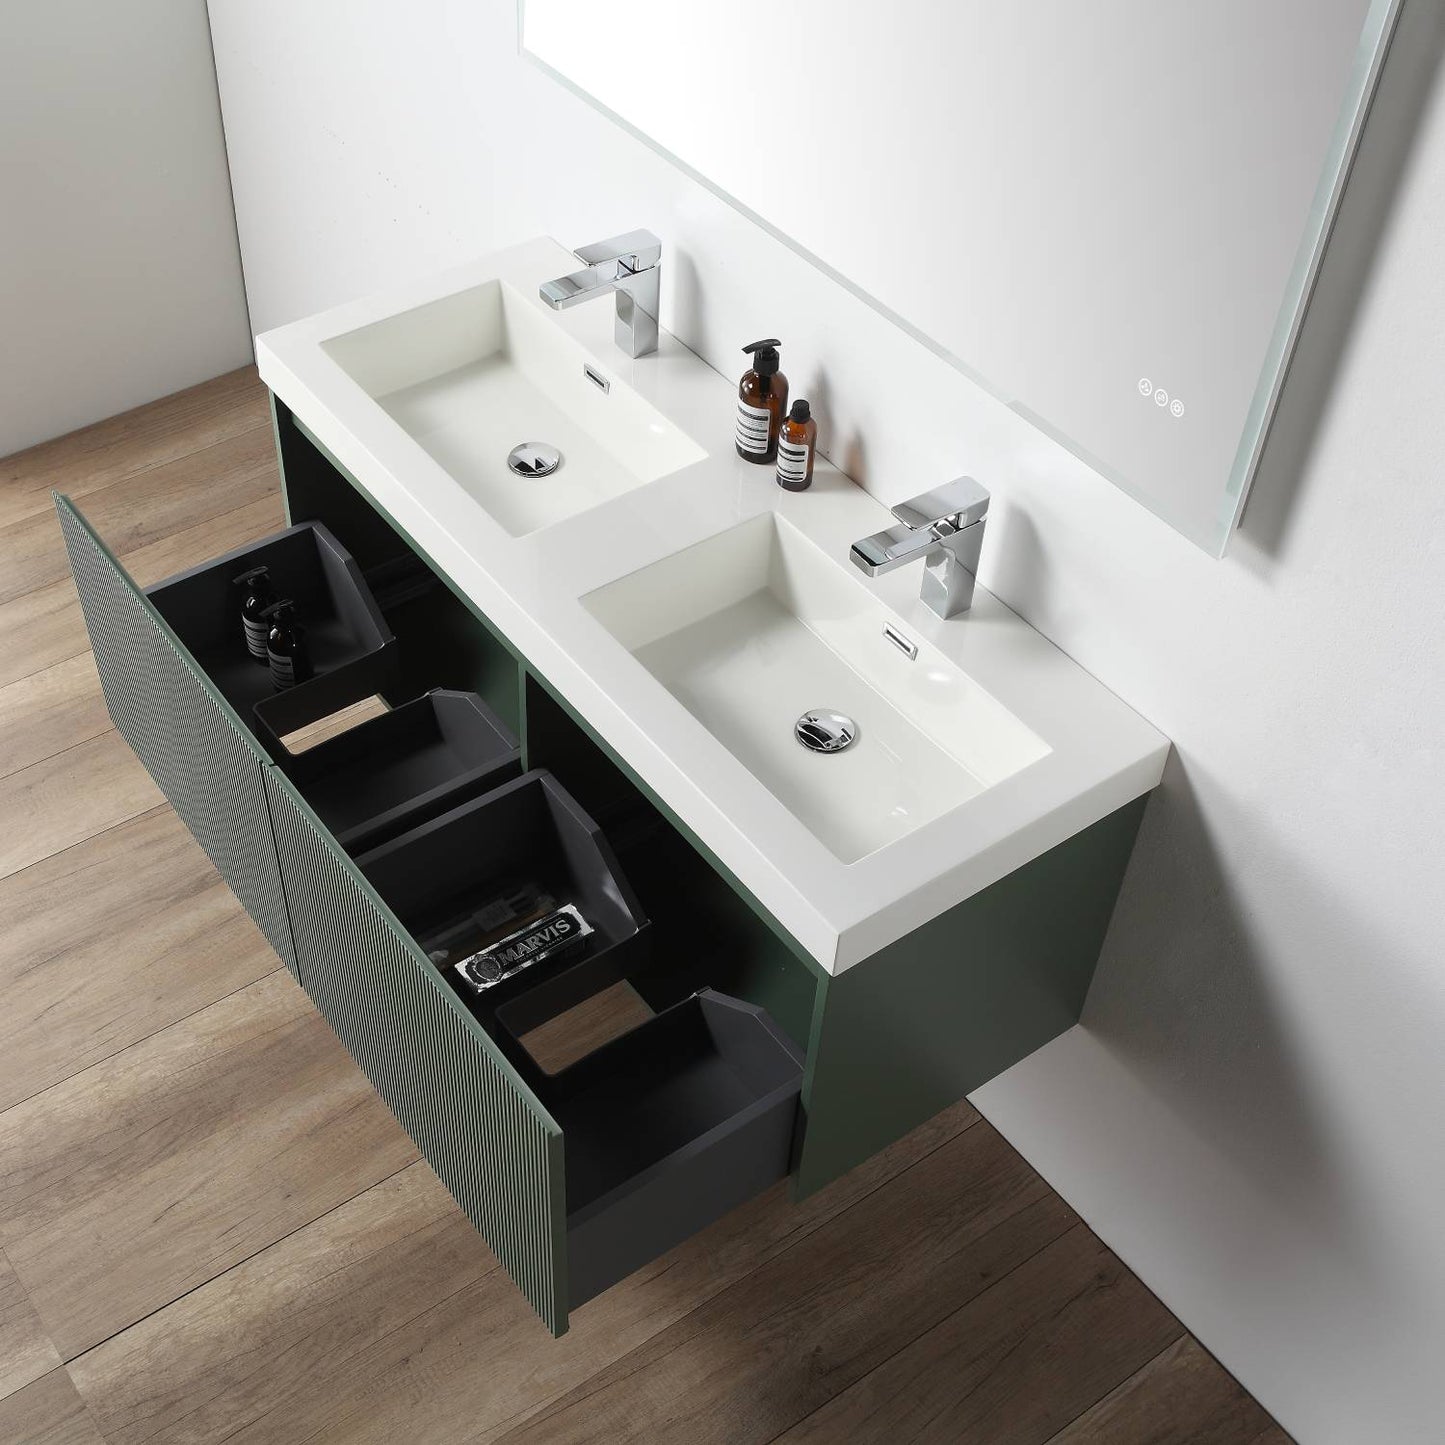 Positano 48" Floating Bathroom Vanity with Double Acrylic Sinks & 2 Side Cabinets - Aventurine Green